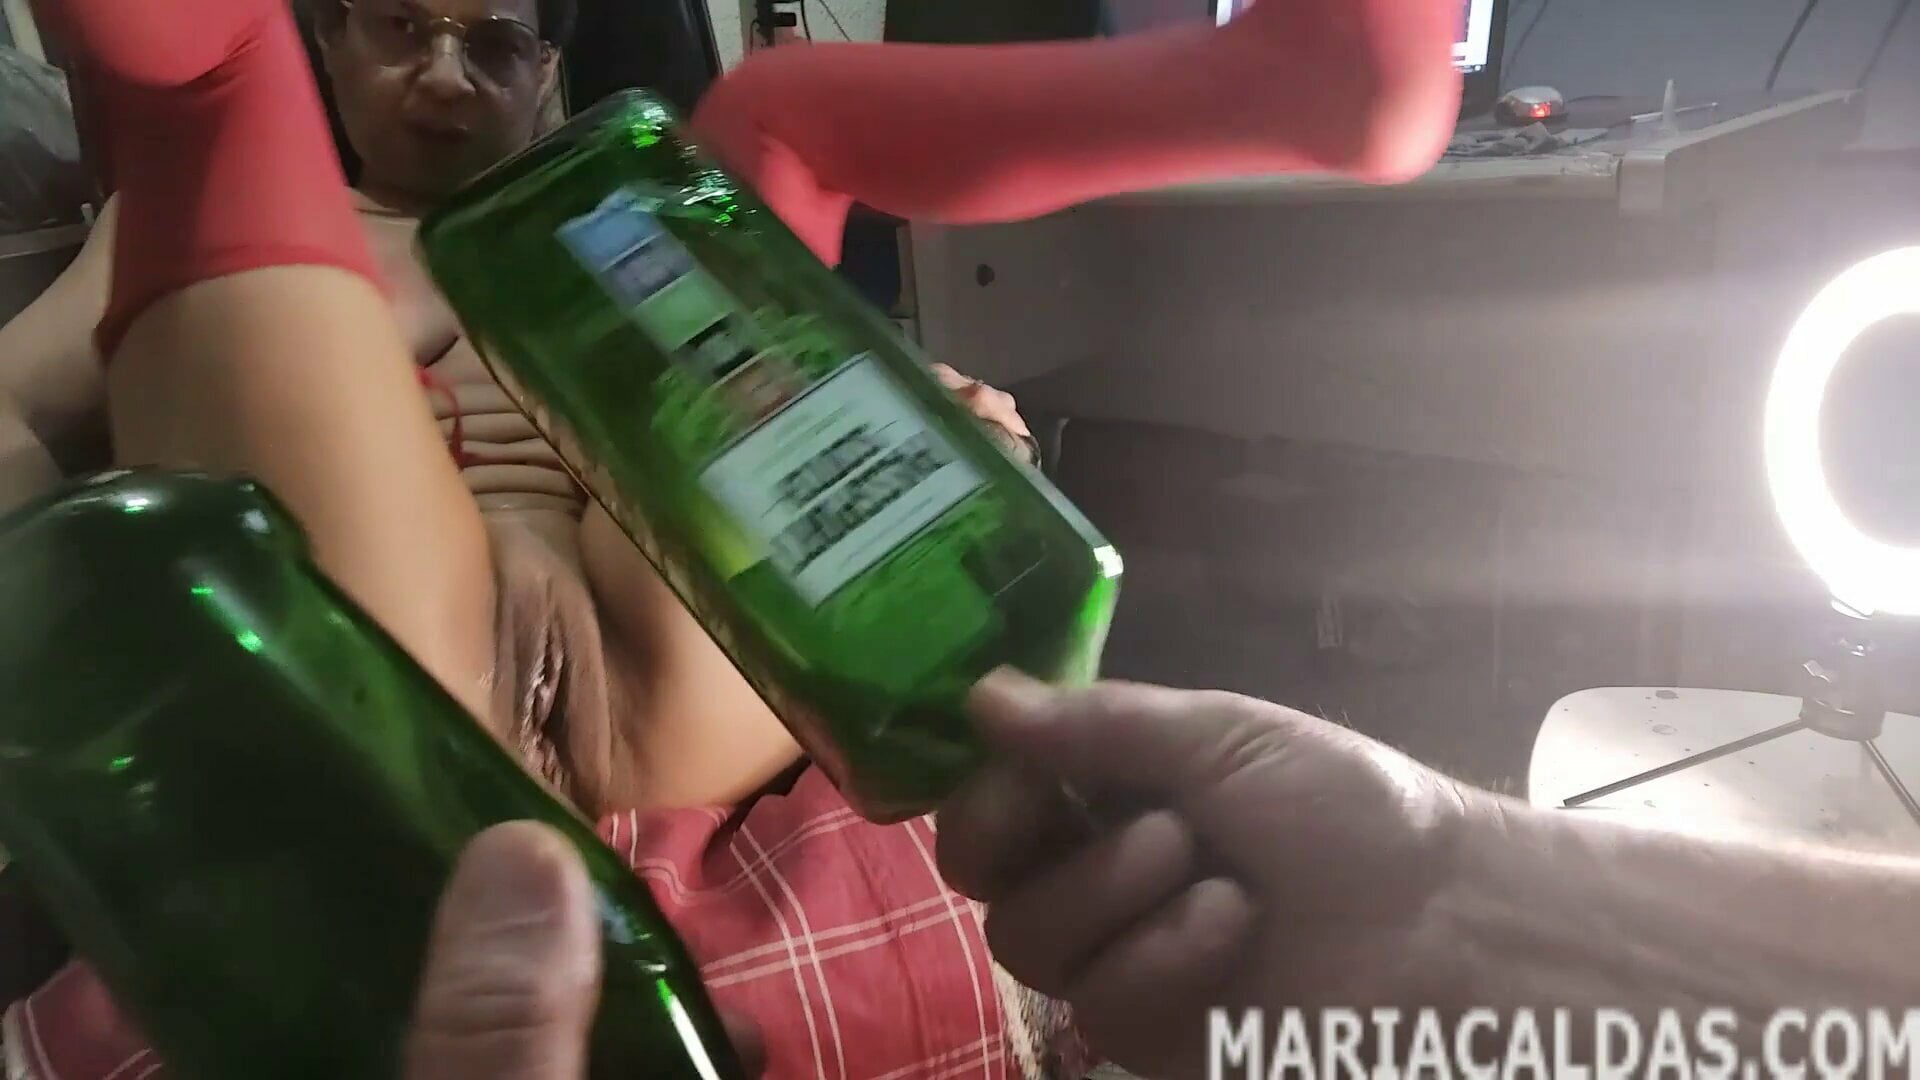 Maria Caldas’ square whiskey bottle